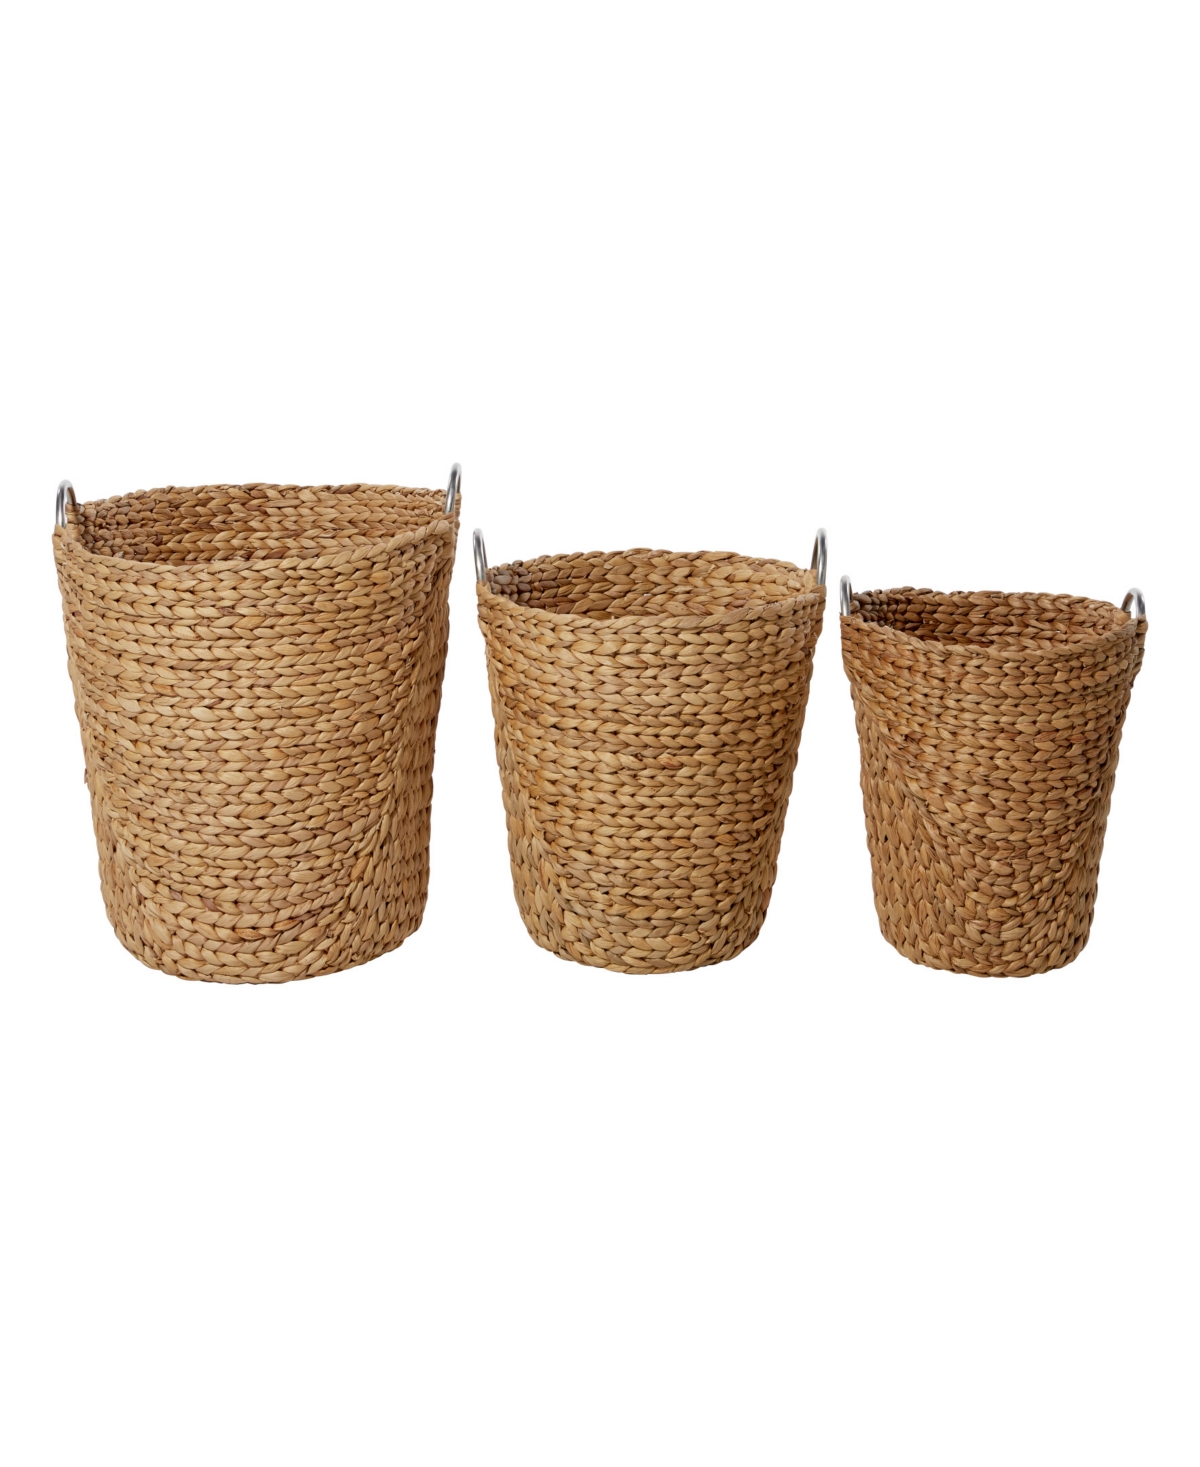 Natural Storage Basket, Set of 3 - Tan